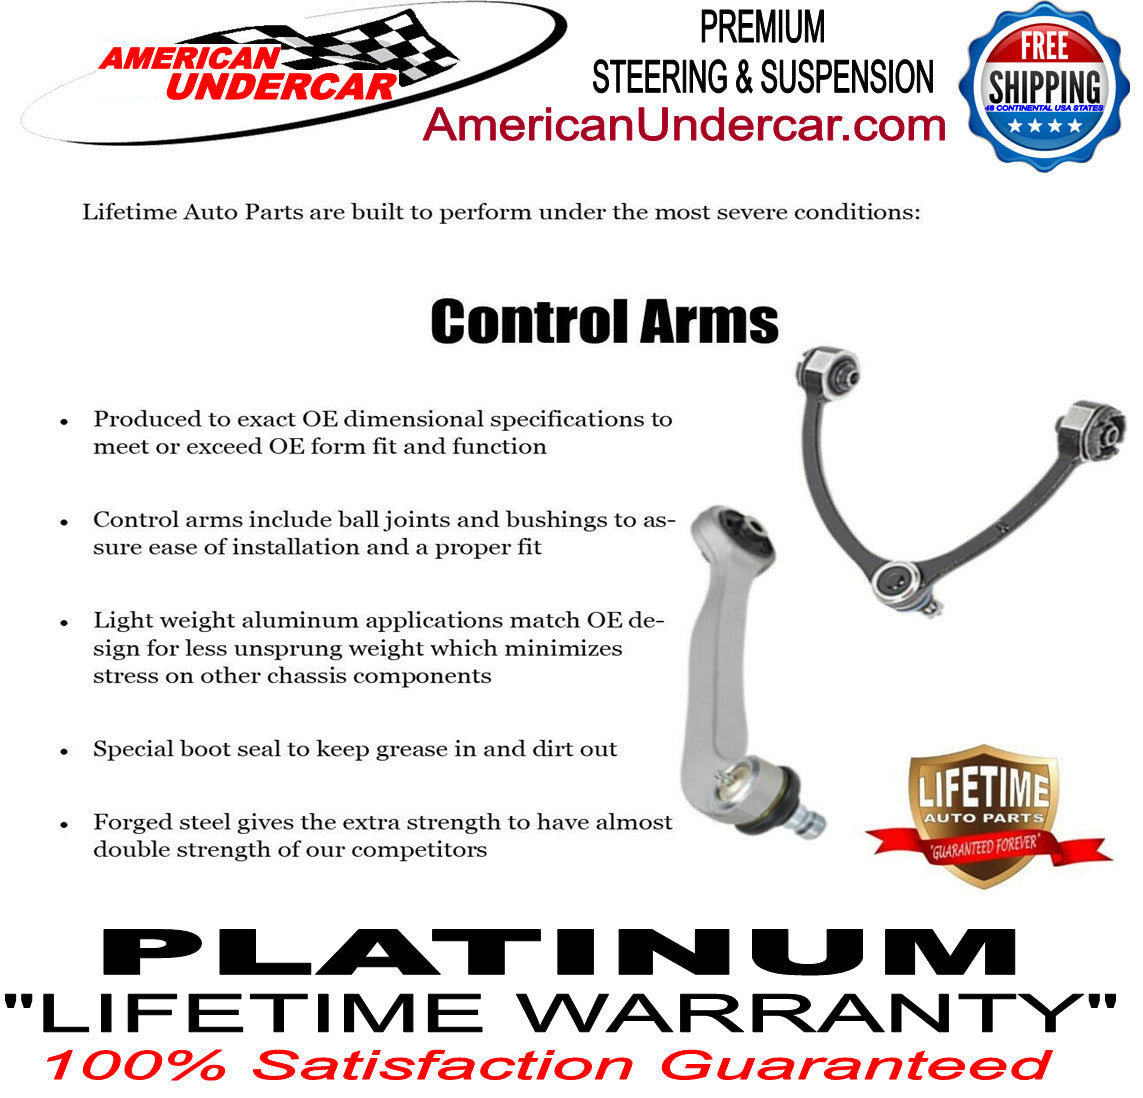 Lifetime New T Design Upgrade Steering Kit for 2009-2012 Dodge Ram 2500, 3500 4x4